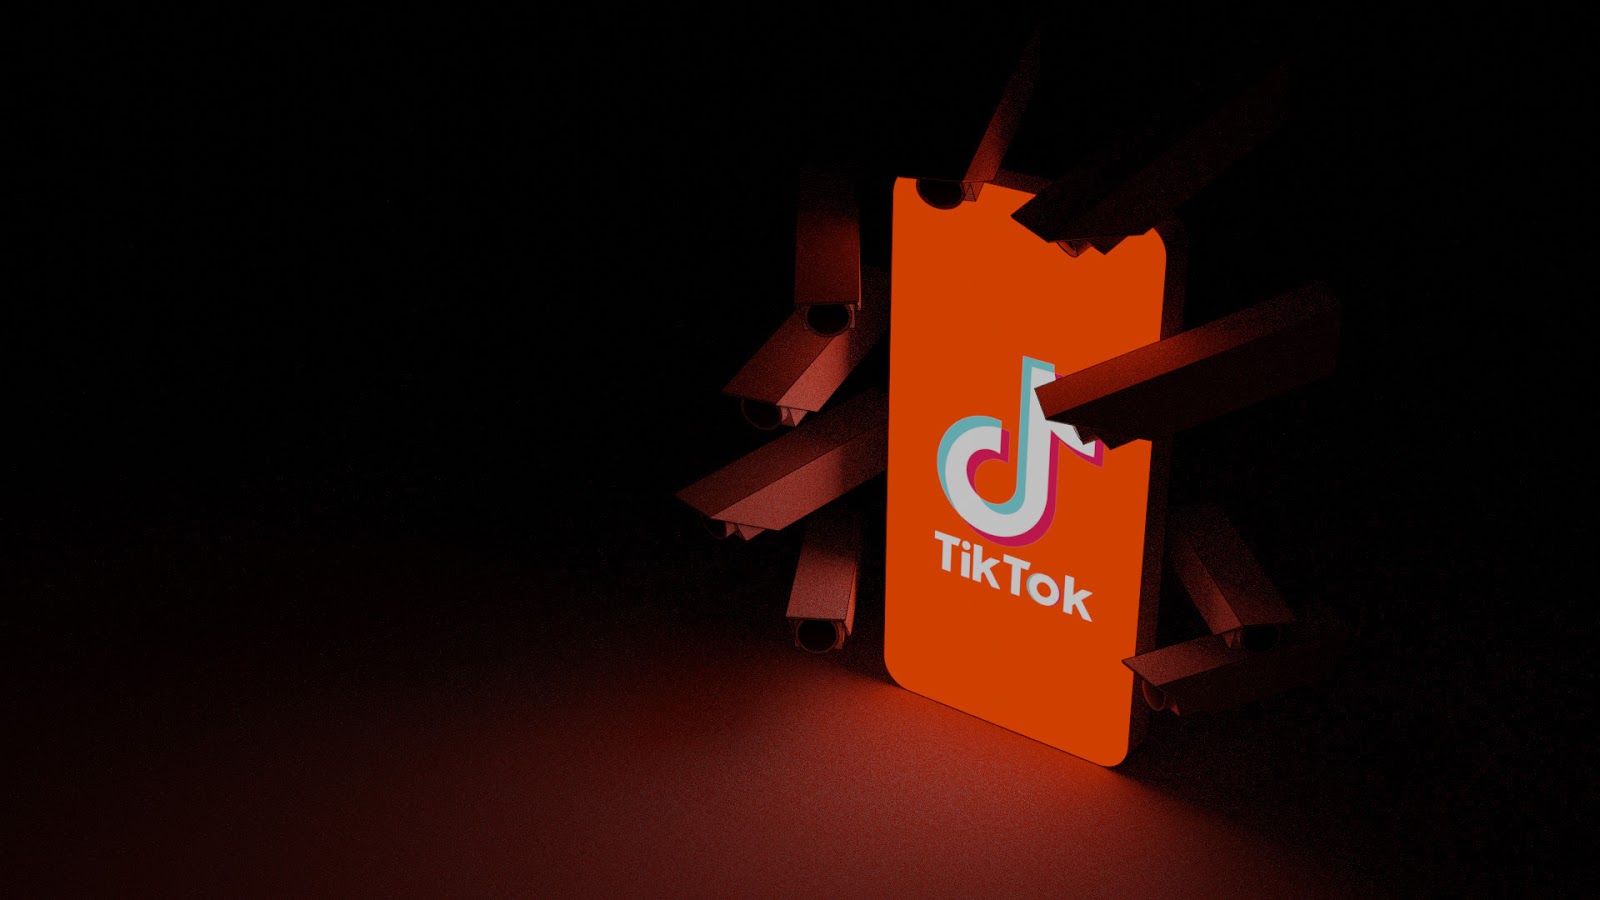 titkok orange logo on phone on black background